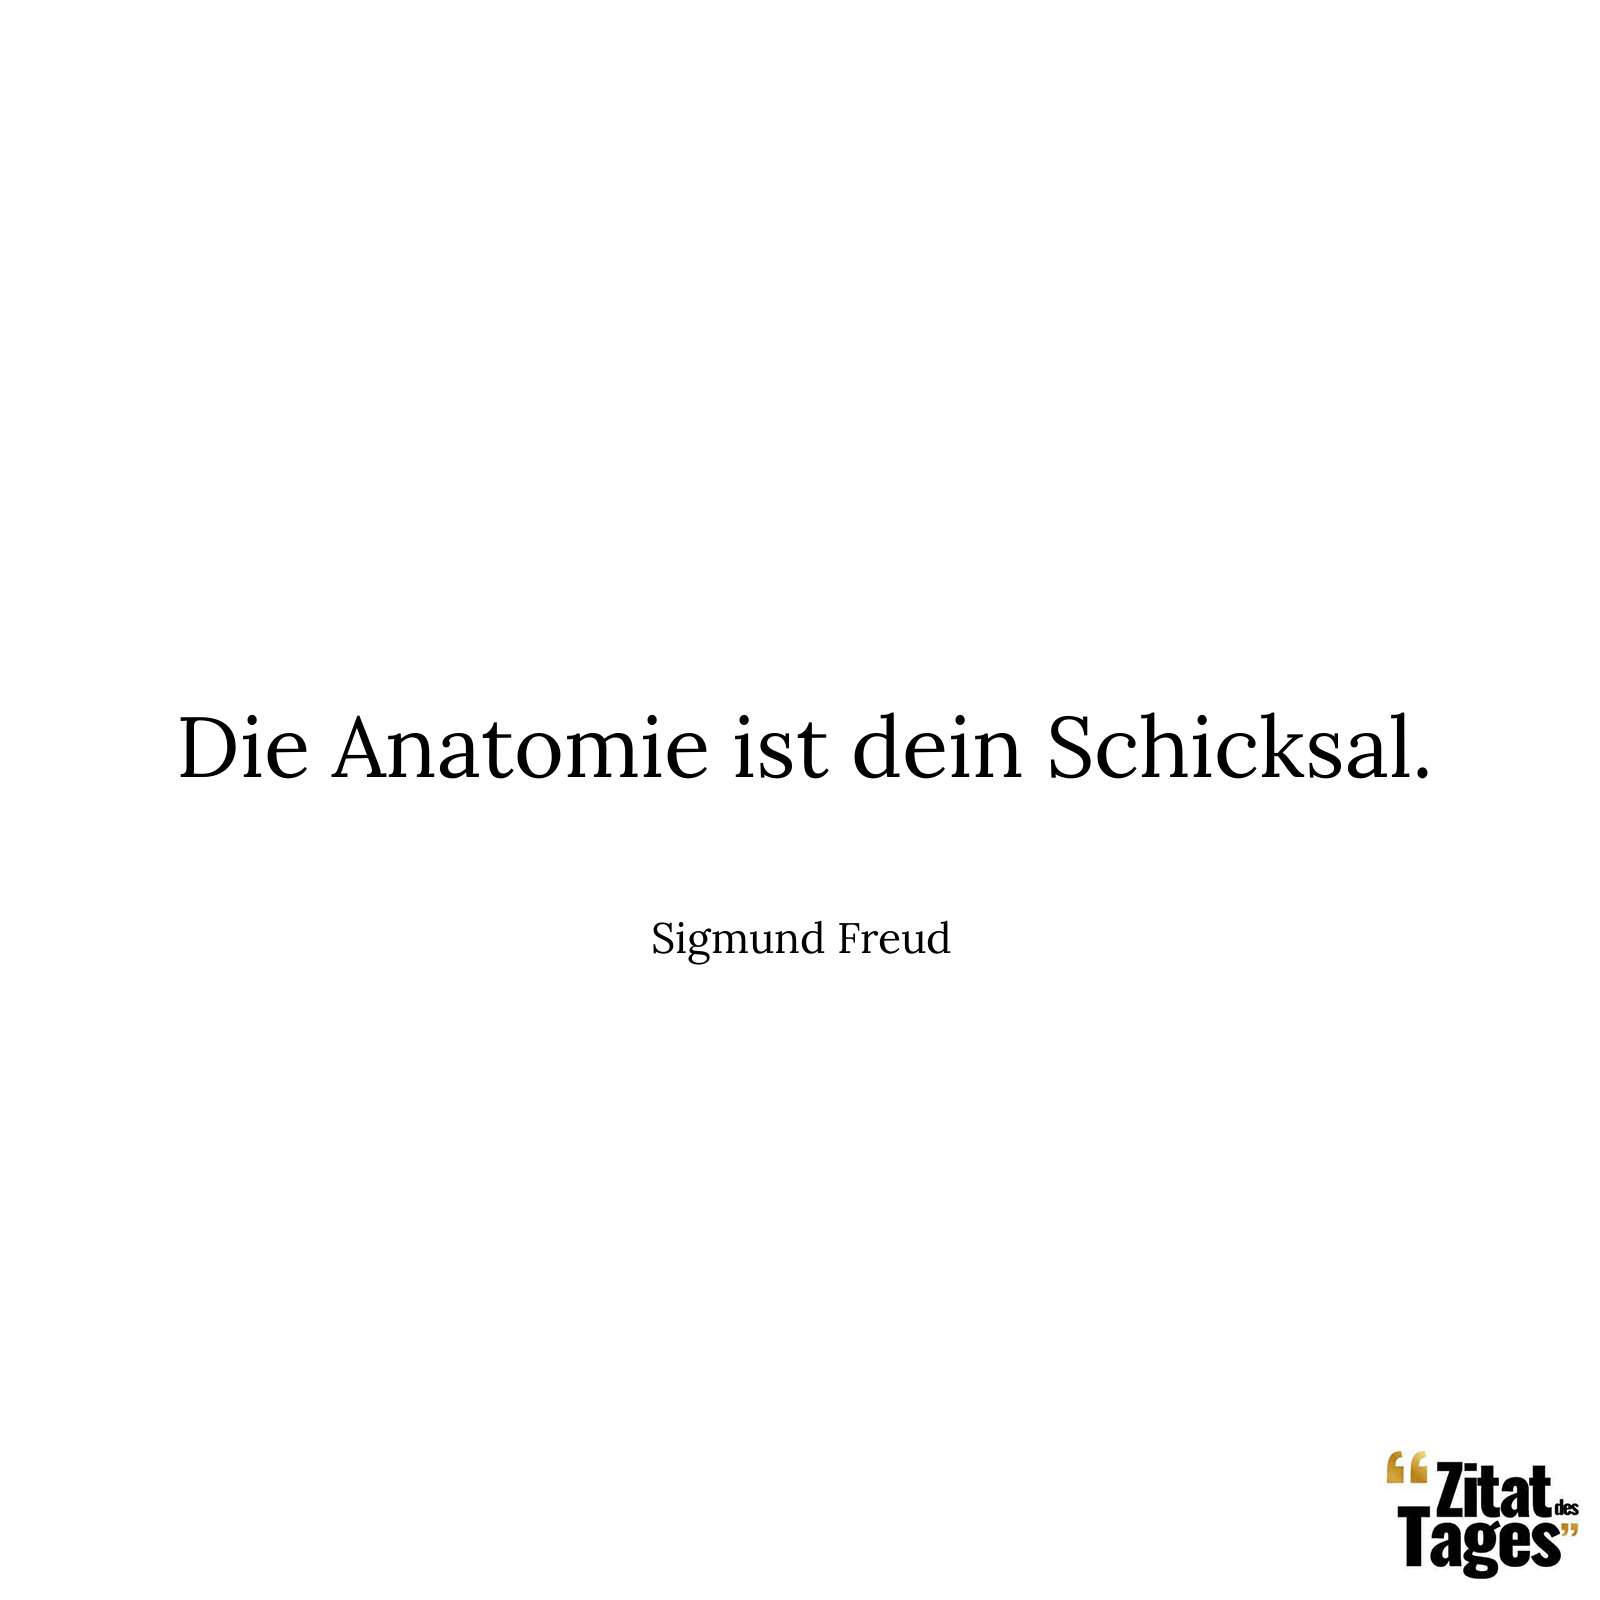 Die Anatomie ist dein Schicksal. - Sigmund Freud